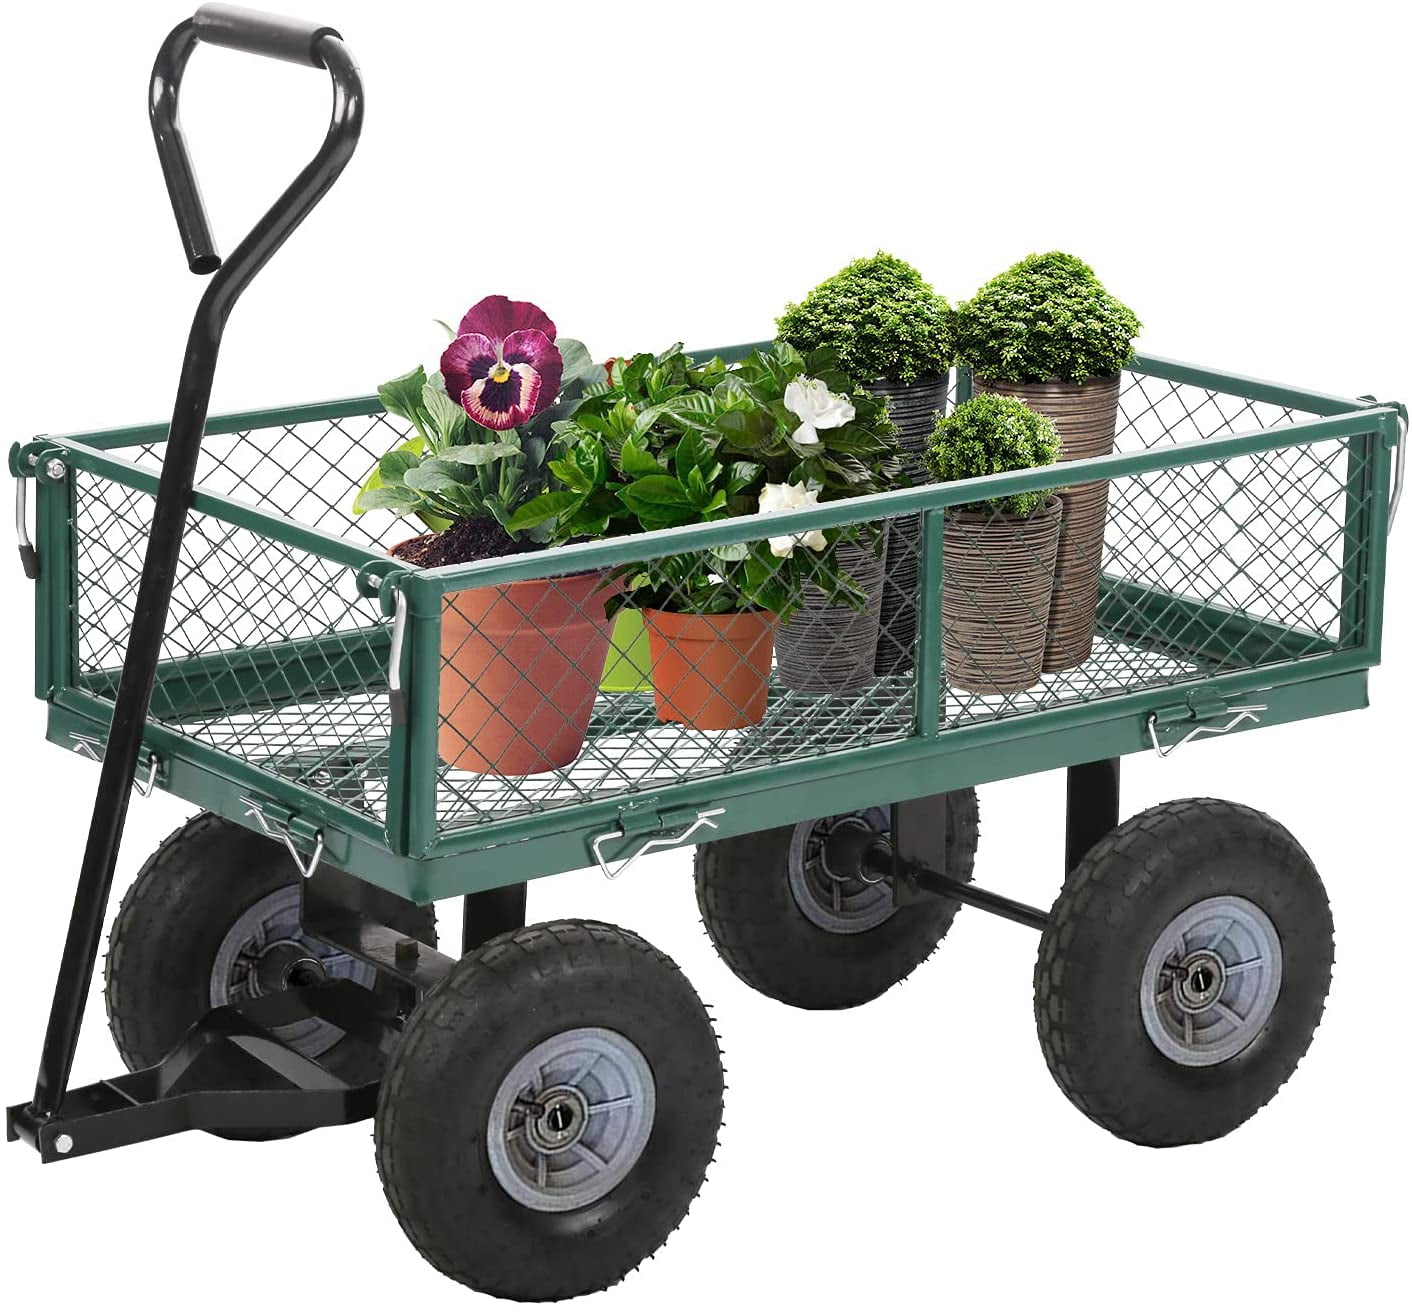 Heavy Duty Outdoor Steel Utility Cart, Steel Garden Utility Cart Wagon